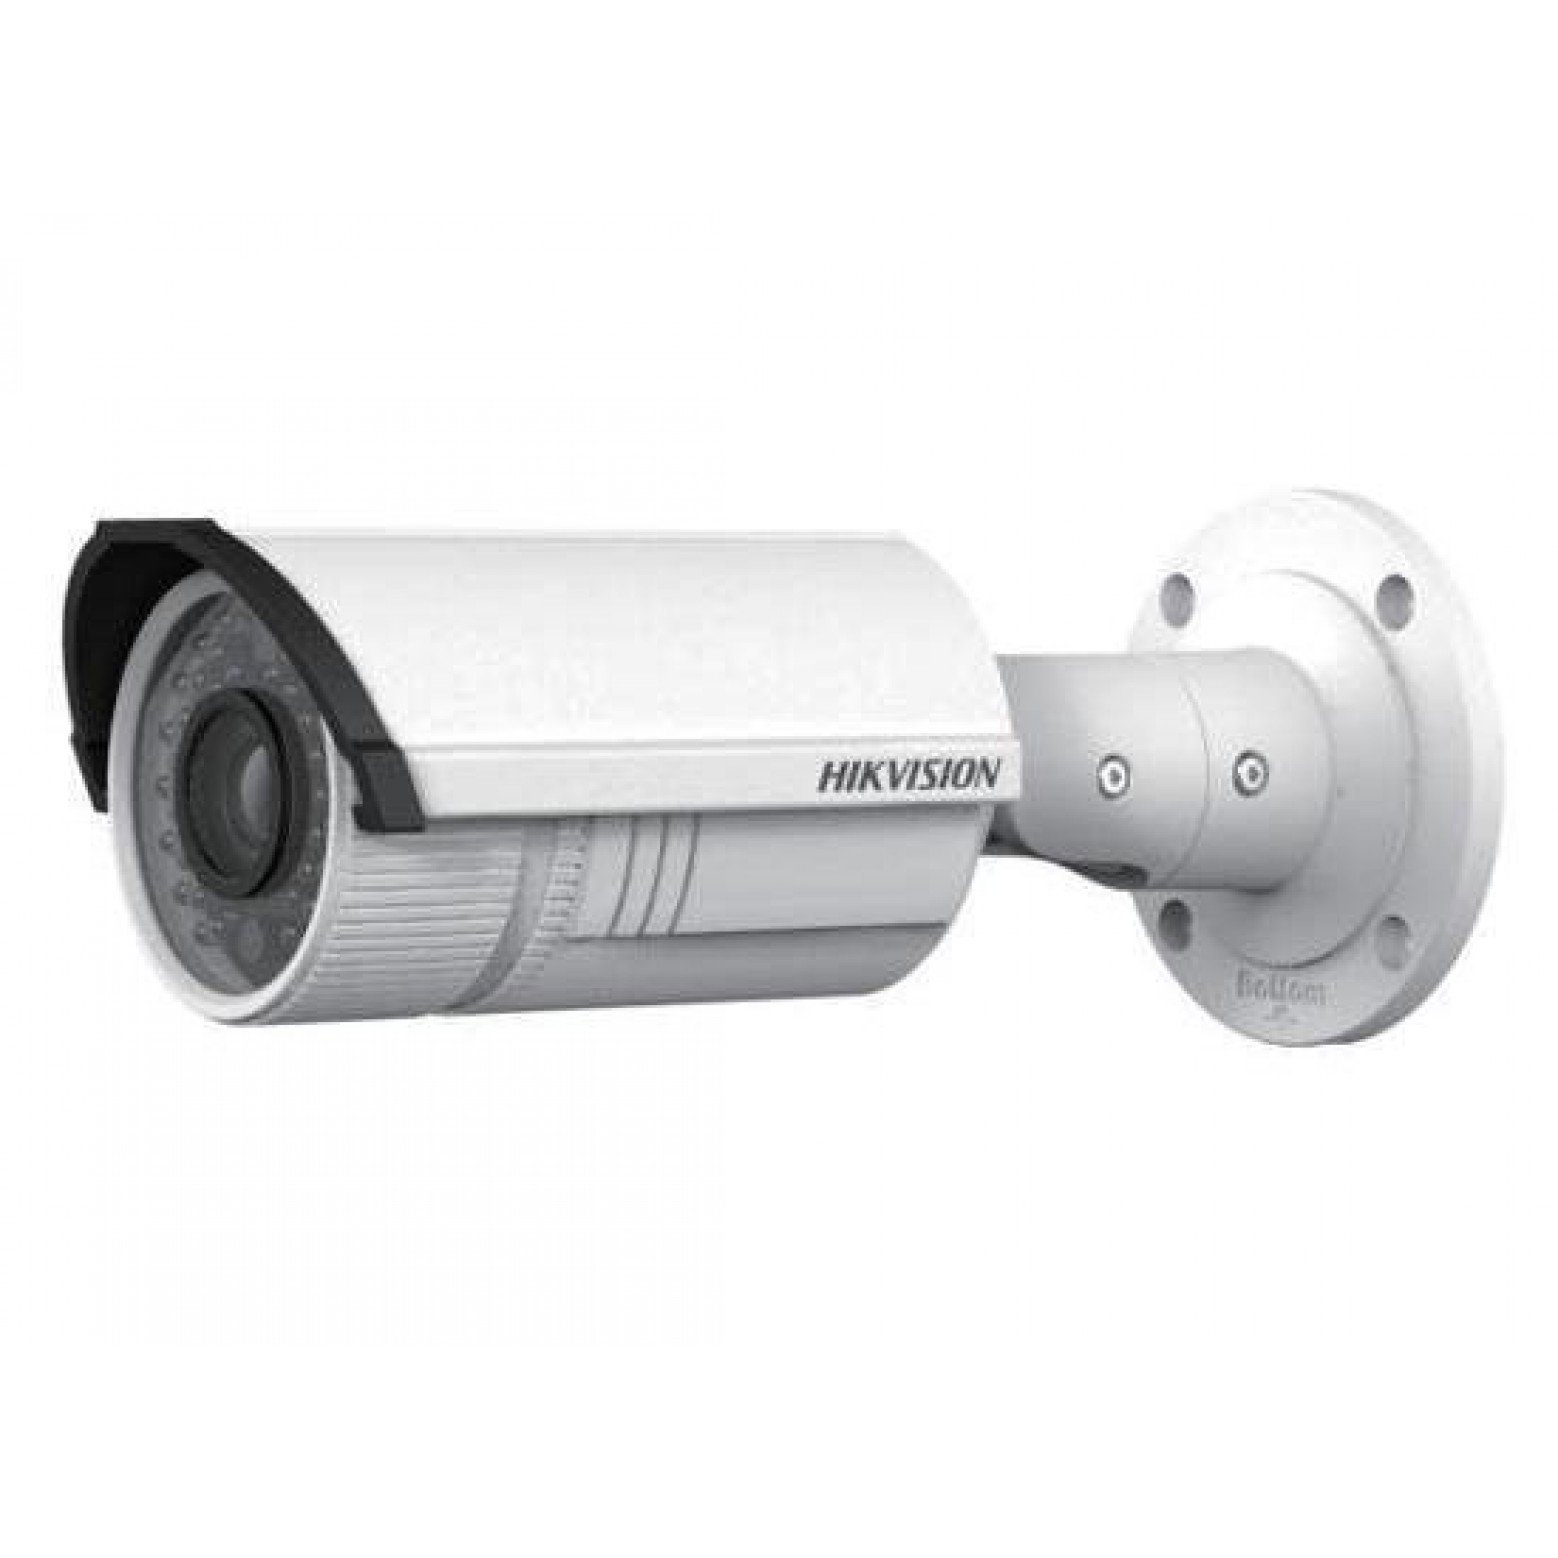 Hikvision DS-2CD2642FWD-IZS Motorzoom varifocale bullet camera, 4 Megapixel, 2,8-12mm lens, 30mtr IR, 120dB